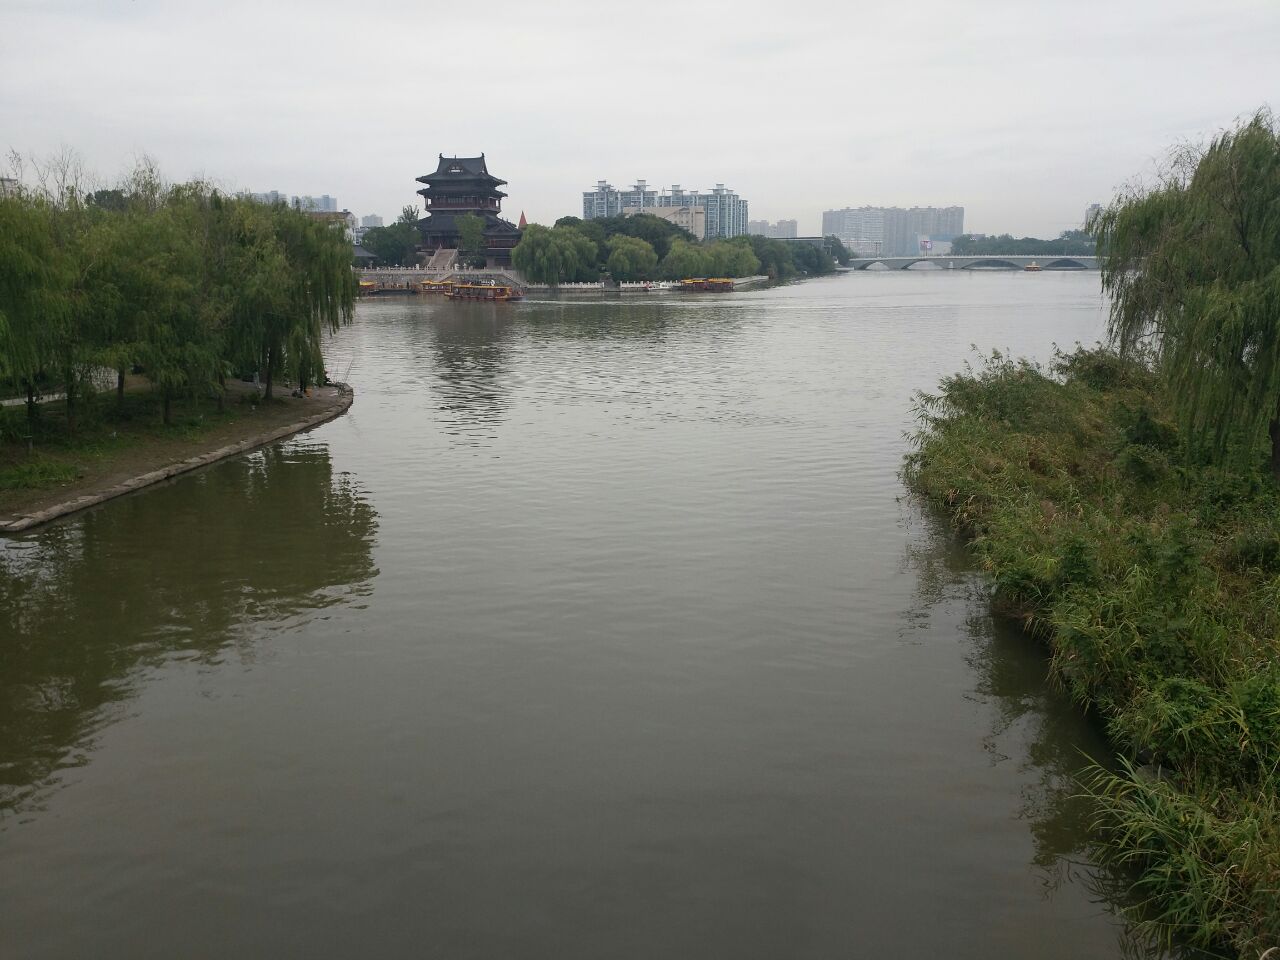 【携程攻略】泰州凤城河画舫游船景点,凤城河是泰州最有名的河流了